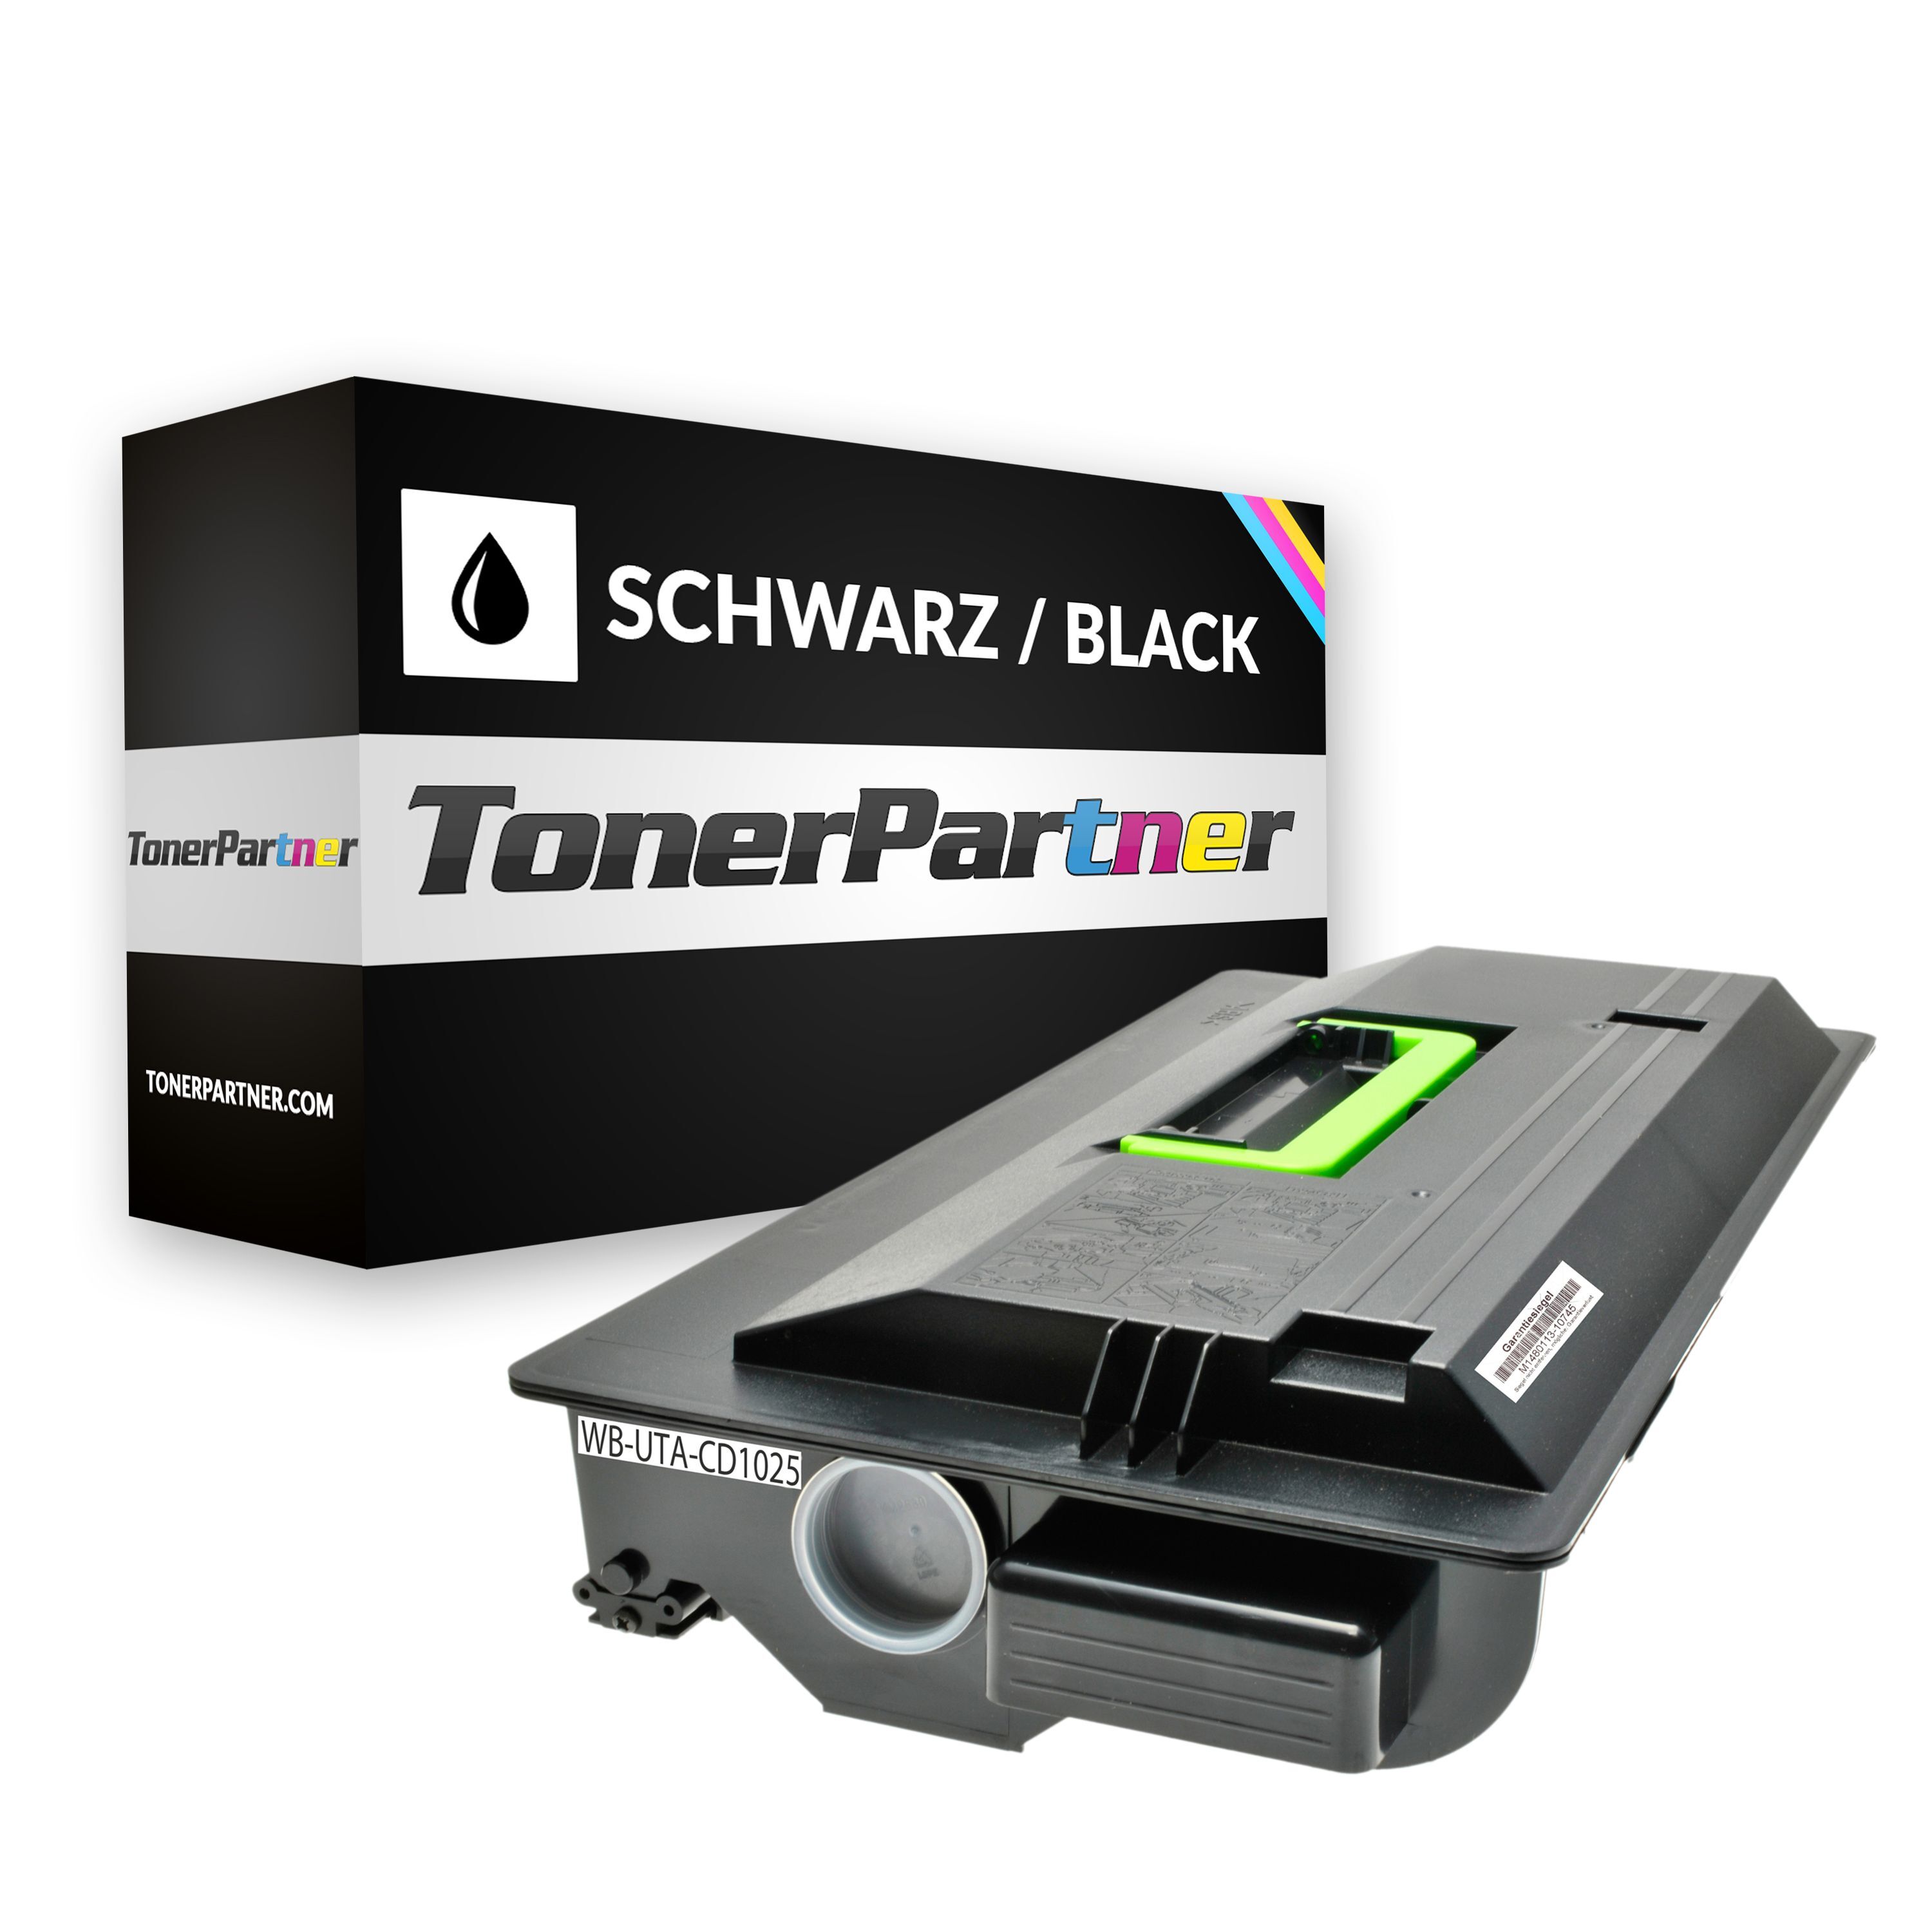 TonerPartner Kompatibel zu Utax CD 1040 Toner (6125 10010) schwarz, 34.000 Seiten, 0,29 Rp pro Seite, Inhalt: 1.080 g von TonerPartner